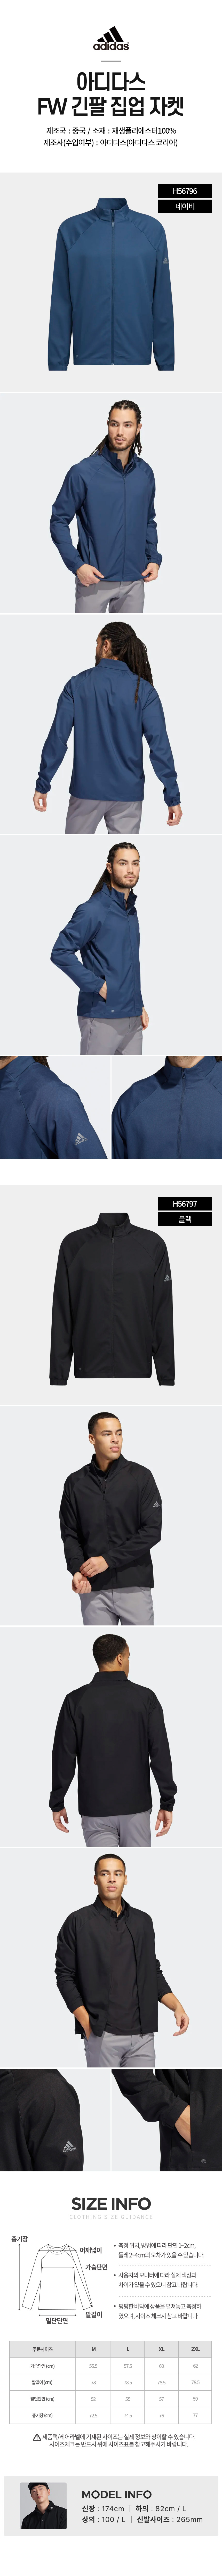 adidas_fw_long_sleeve_zip_up_jacket_22.jpg